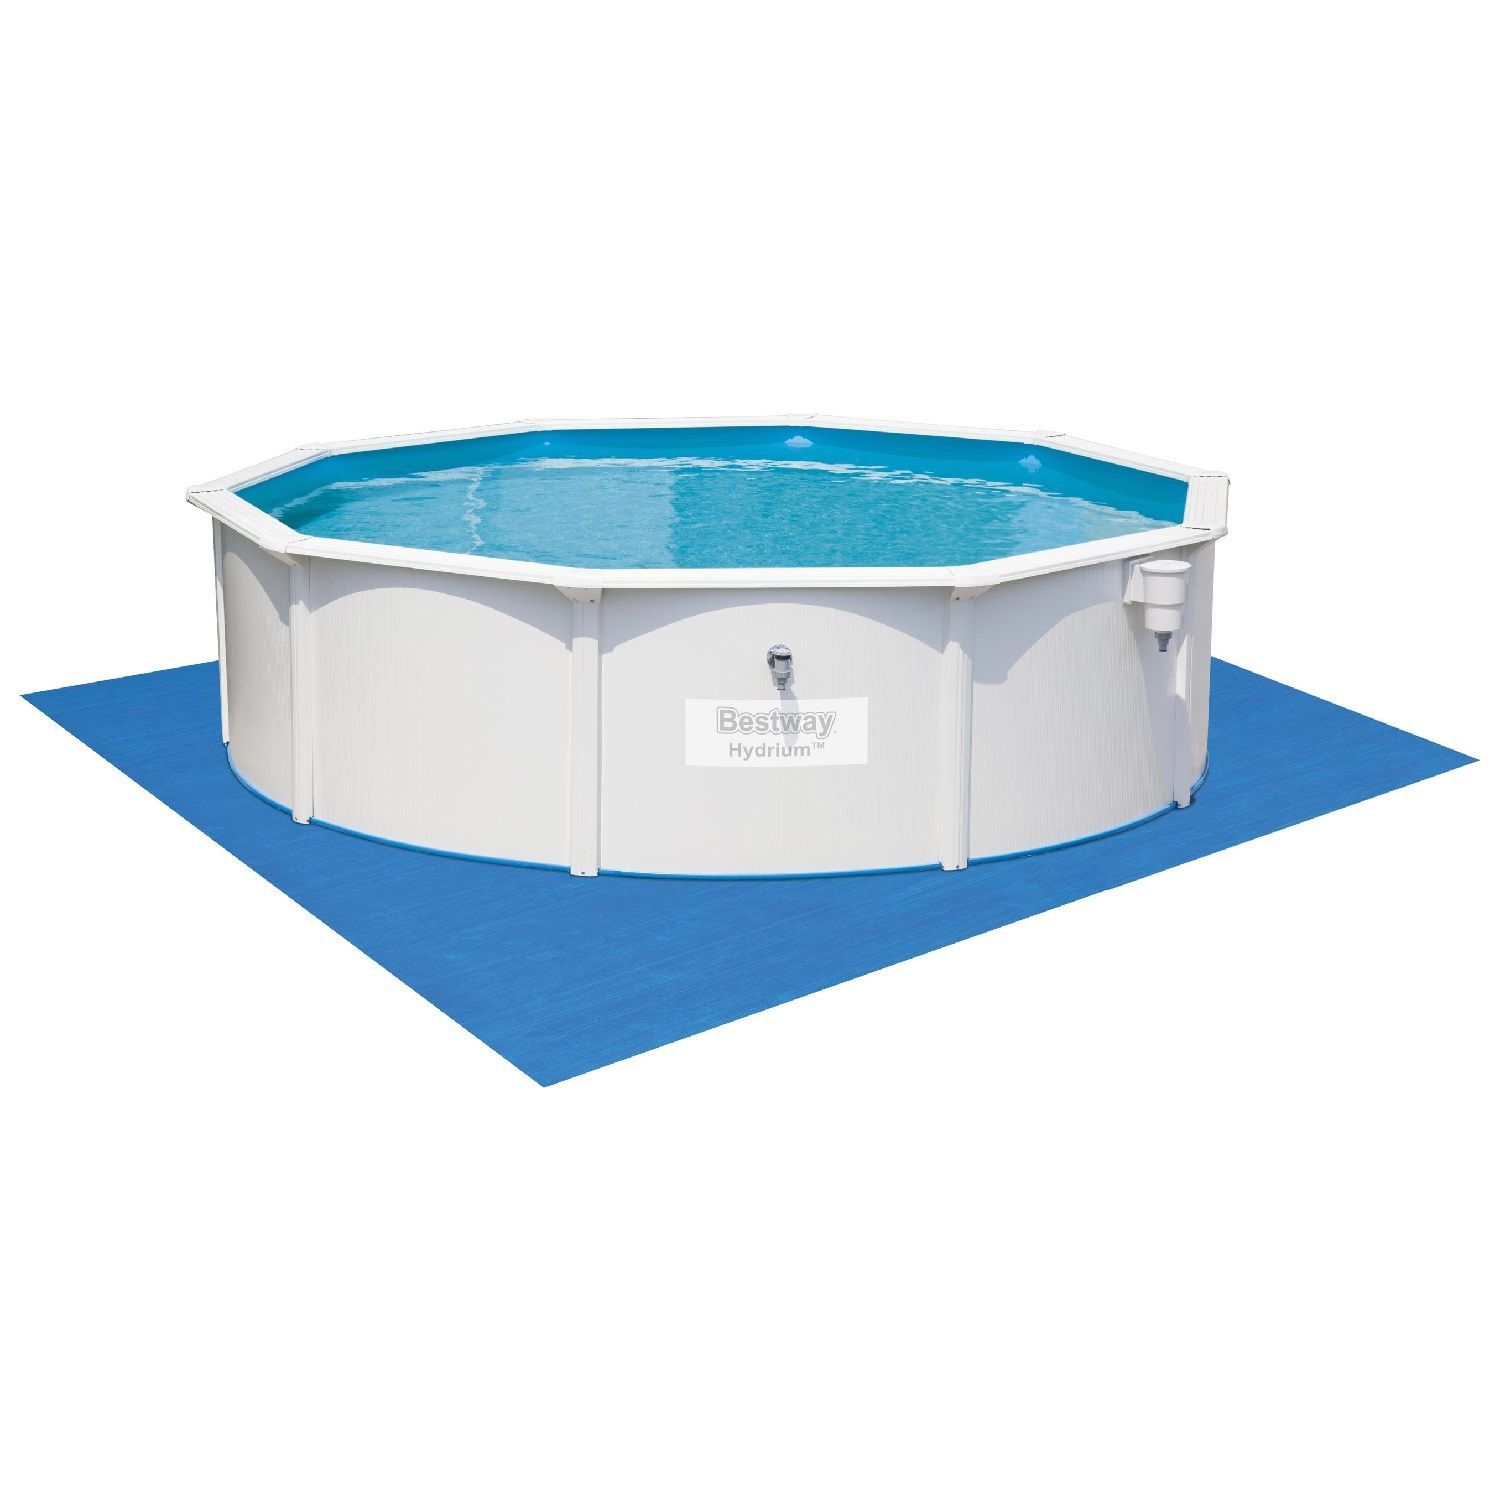 Сборный круглый бассейн Bestway Hydrium 56384 (460х120 см) с песочным фильтром, лестницей и тентом от магазина gidro-z